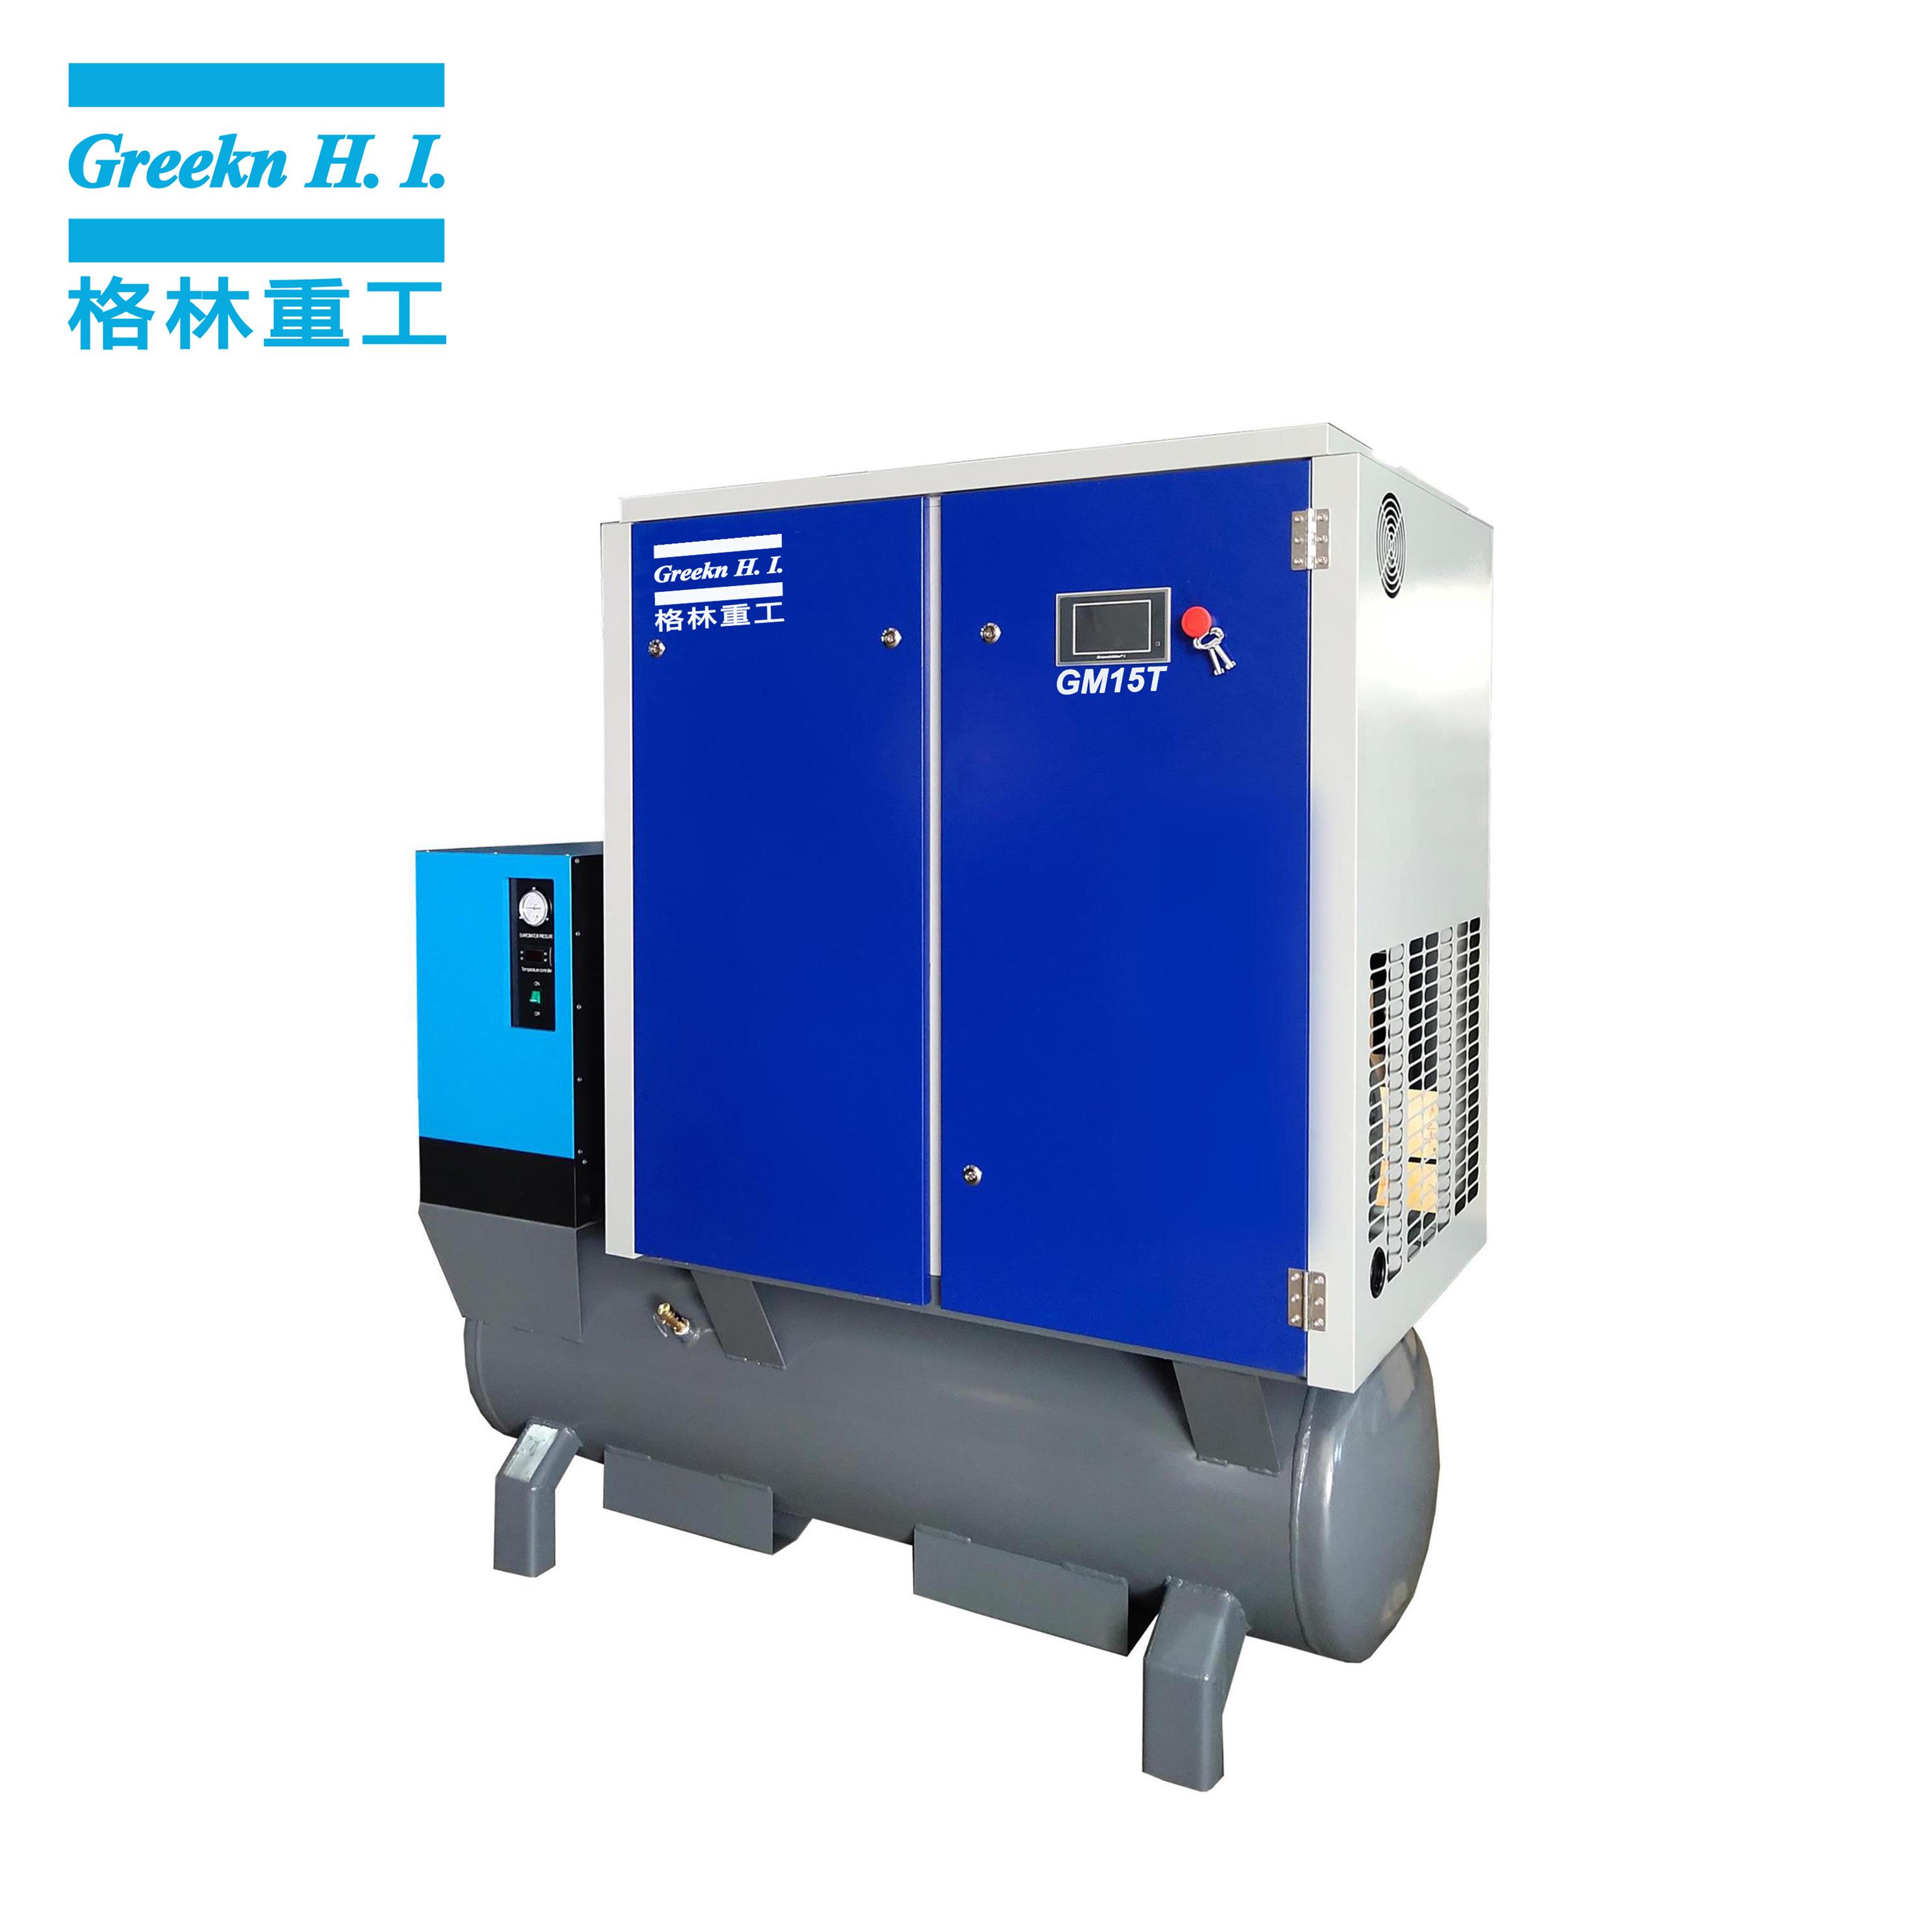 Greeknhi Screw Air Compressor GM15T all in one laser cutting use screw air compressor